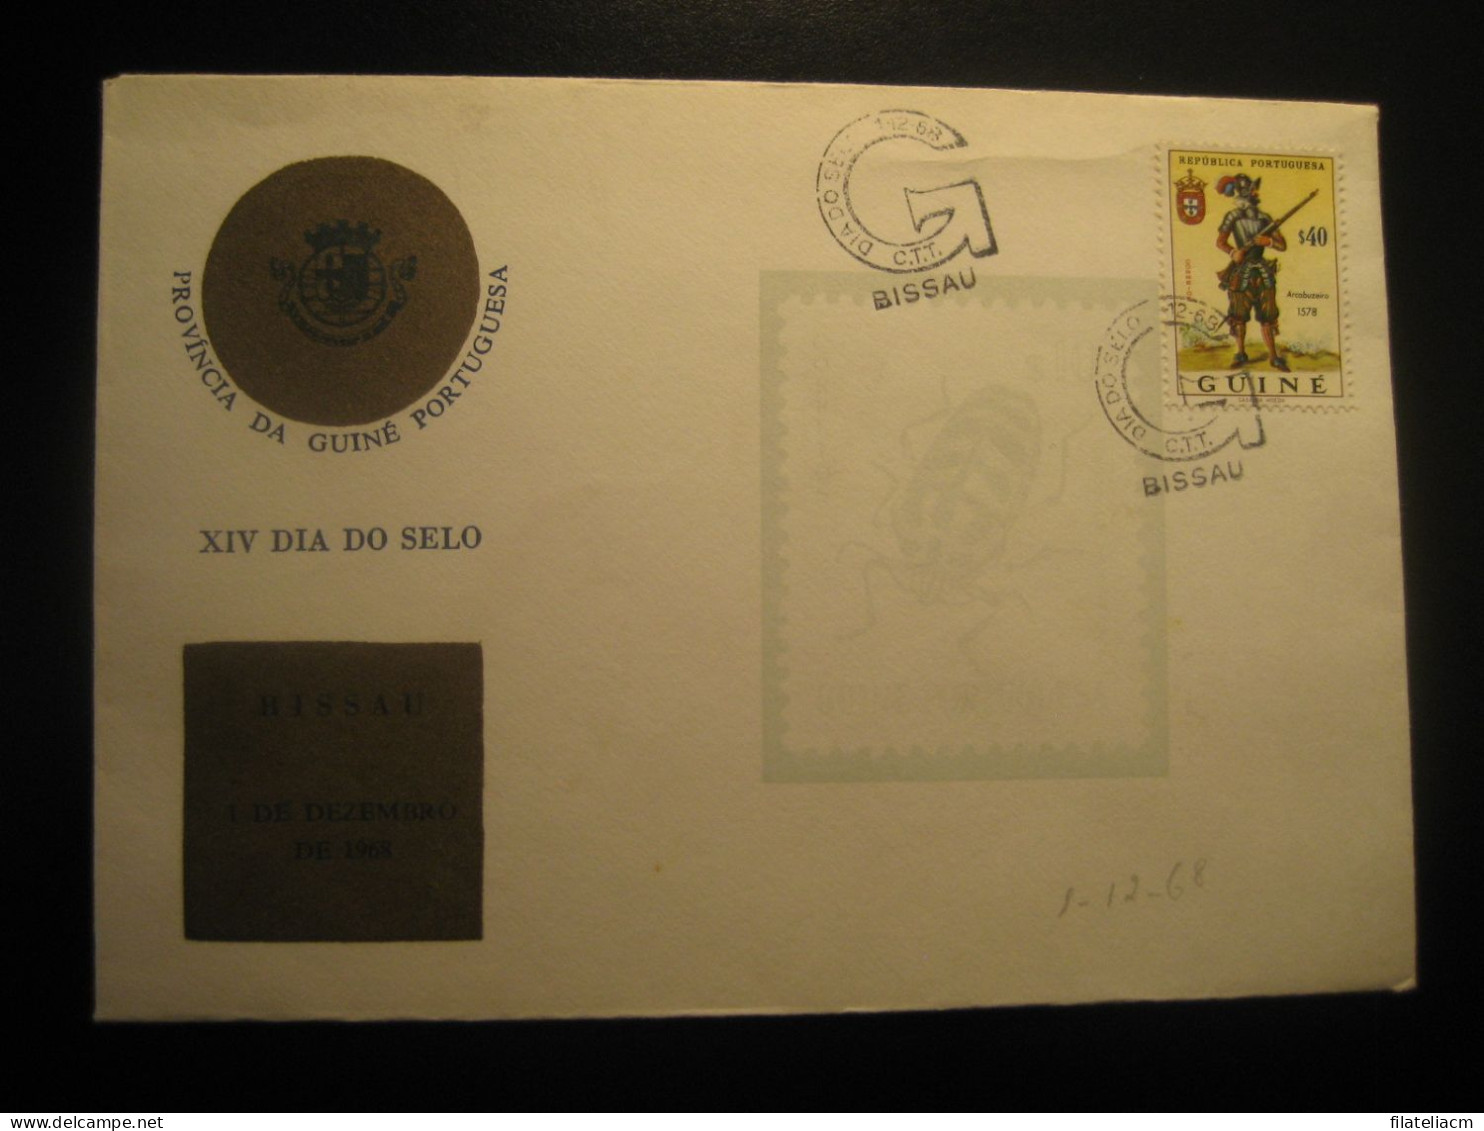 BISSAU 1968 Arcabuzeiro Stamp Dia Do Selo Cancel Cover GUINEA Portuguese Colonies Portugal Area - Portugiesisch-Guinea